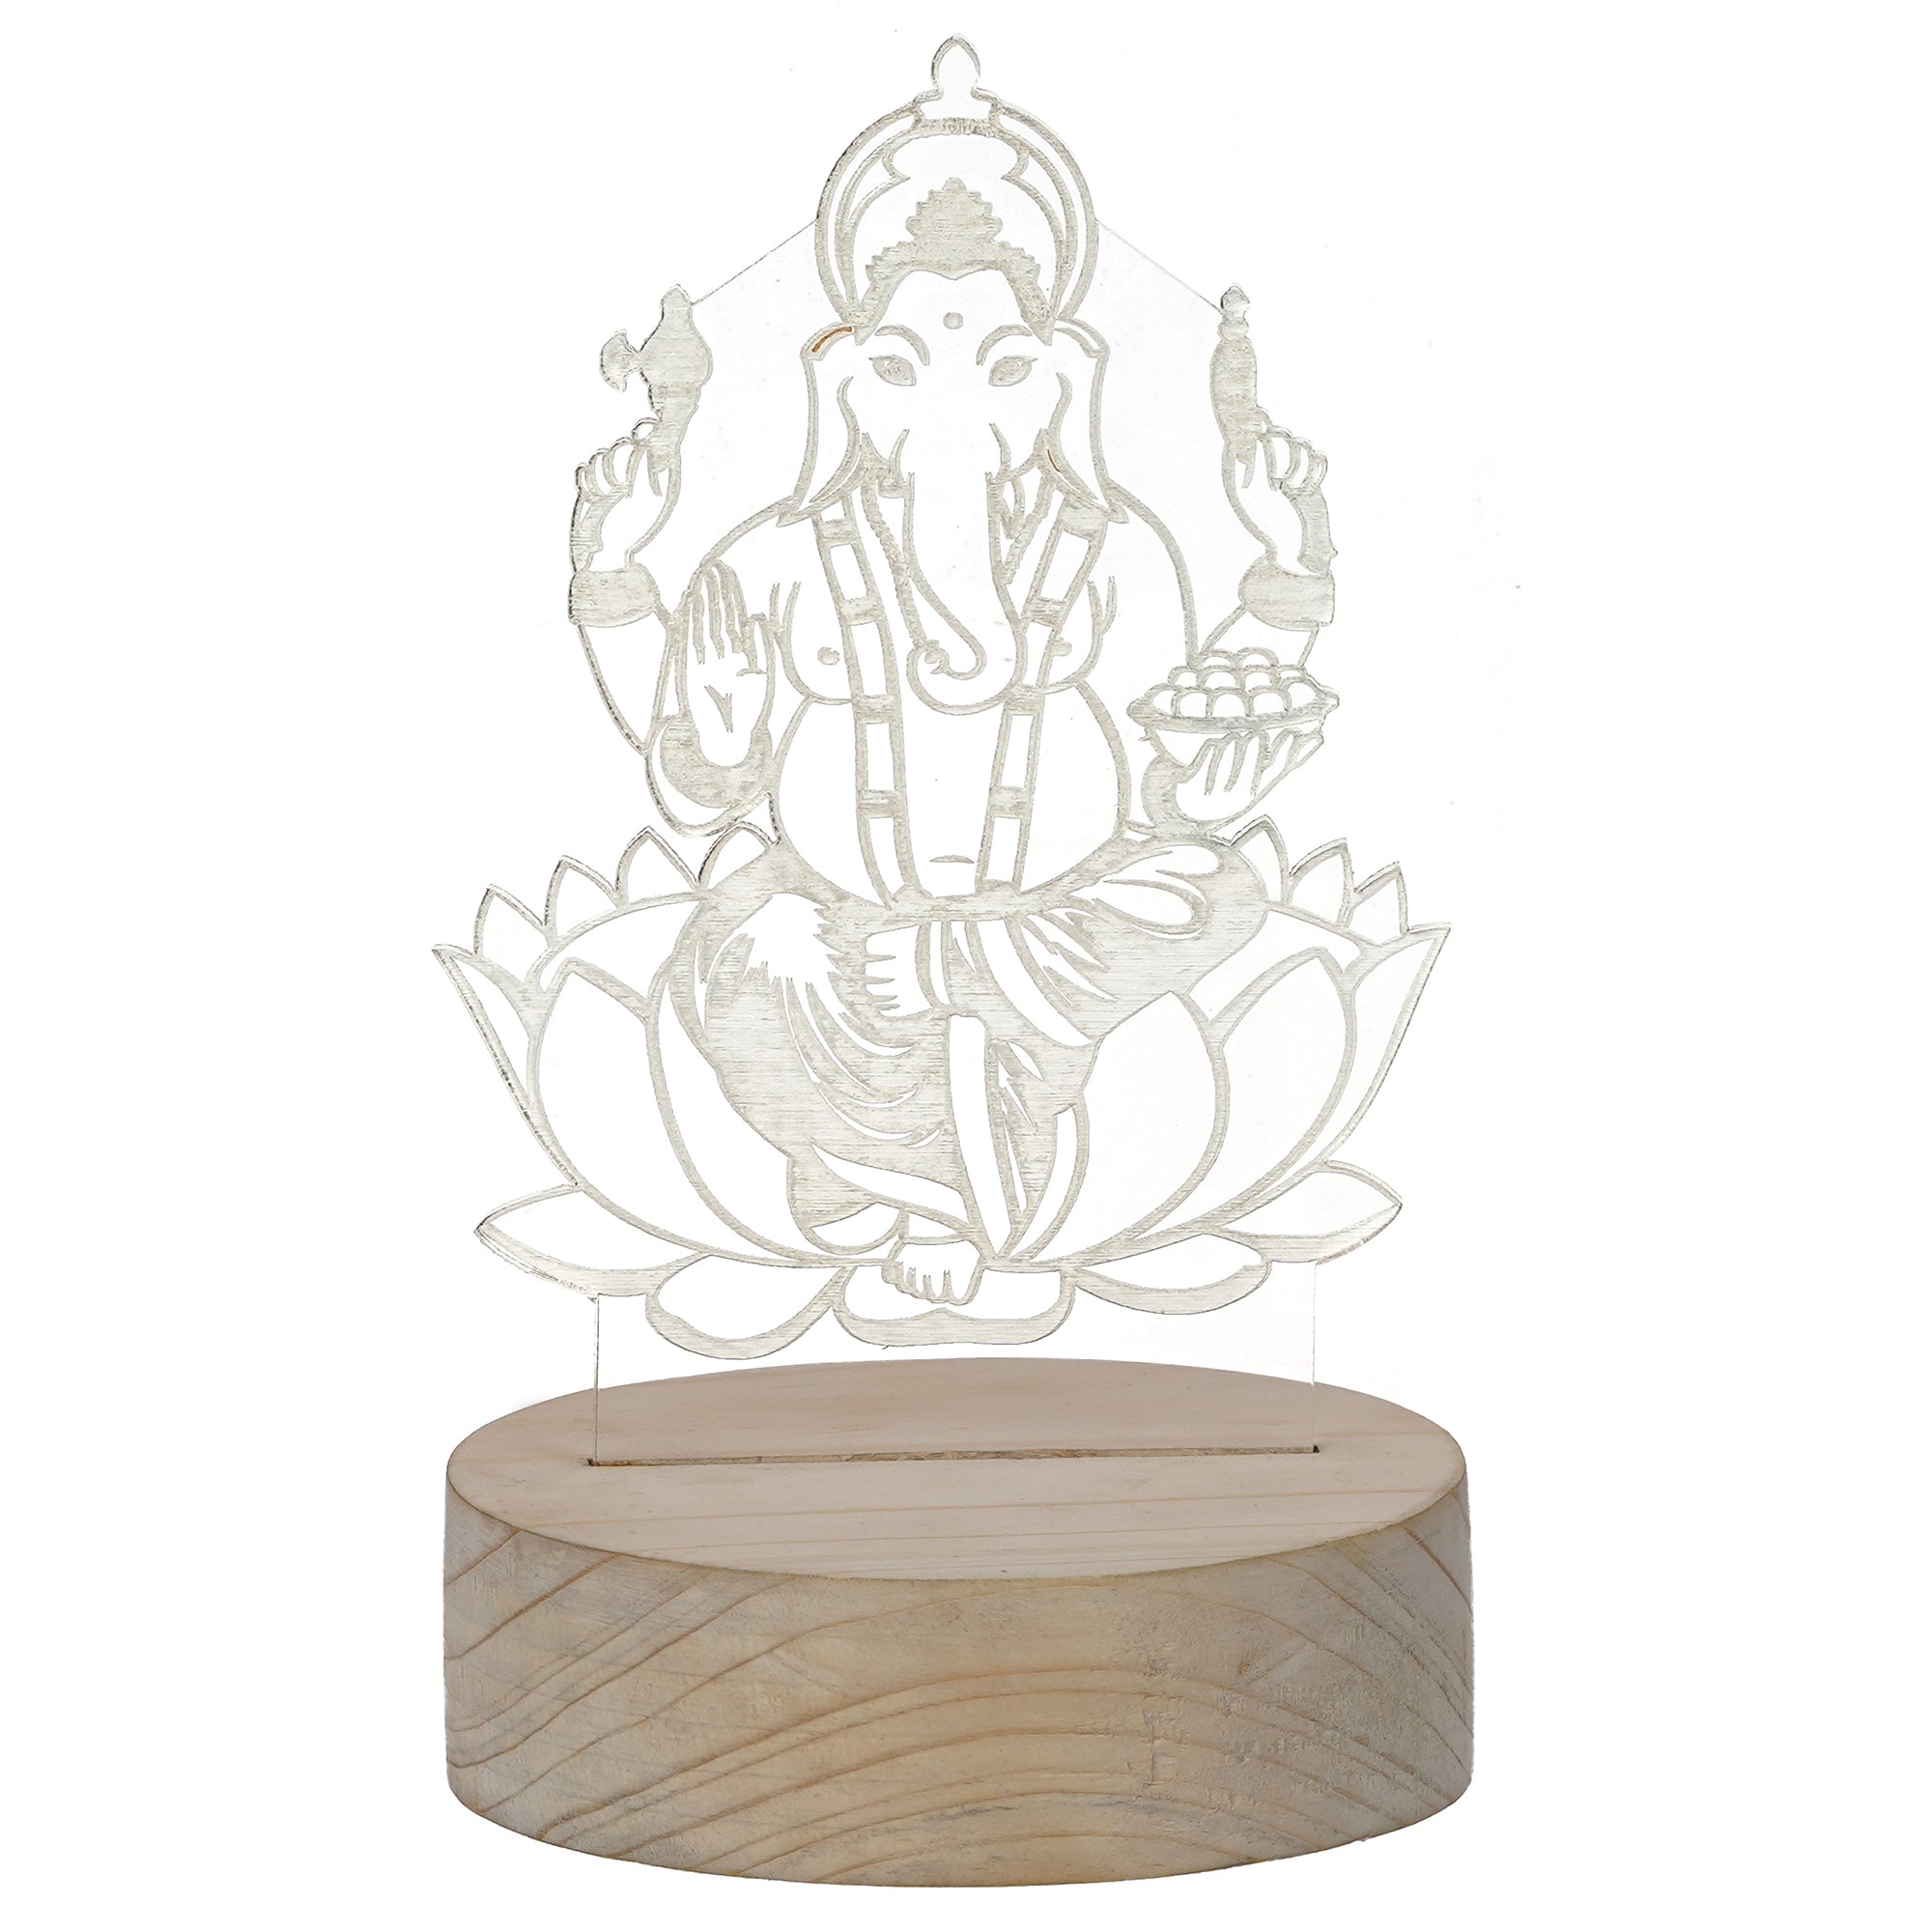 Lord Ganesha Design Carved on Acrylic & Wood Base Night Lamp 2